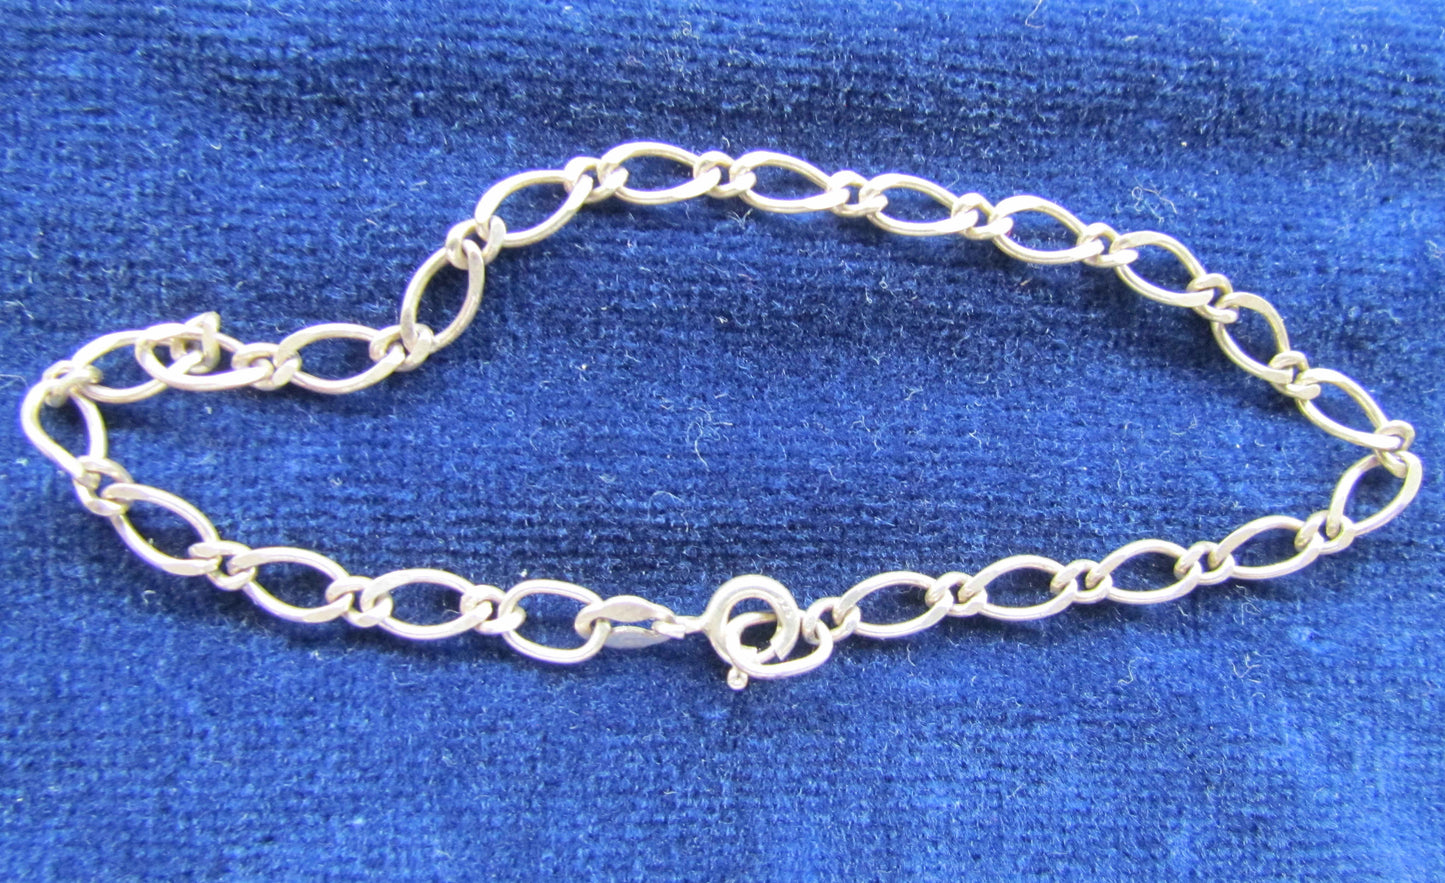 Vintage Silver Curb Link Bracelet Anklet With Long & Short Links 2.7 grams